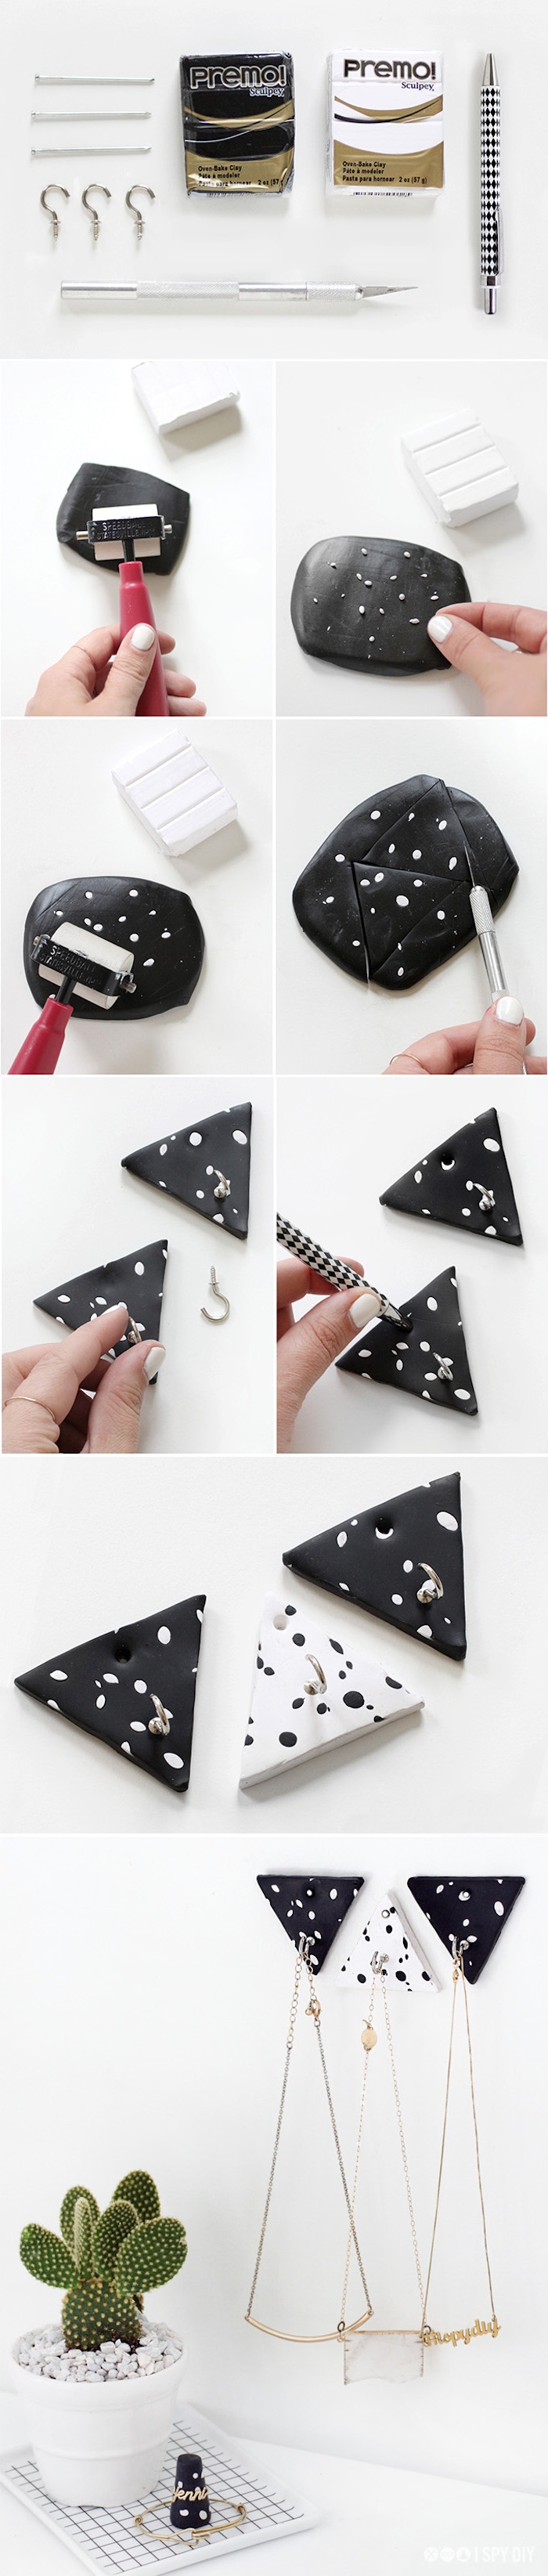 présentoir bijoux en forme de patère de triangles noir et blanc pour accrocher des colliers, rangement diy chambre